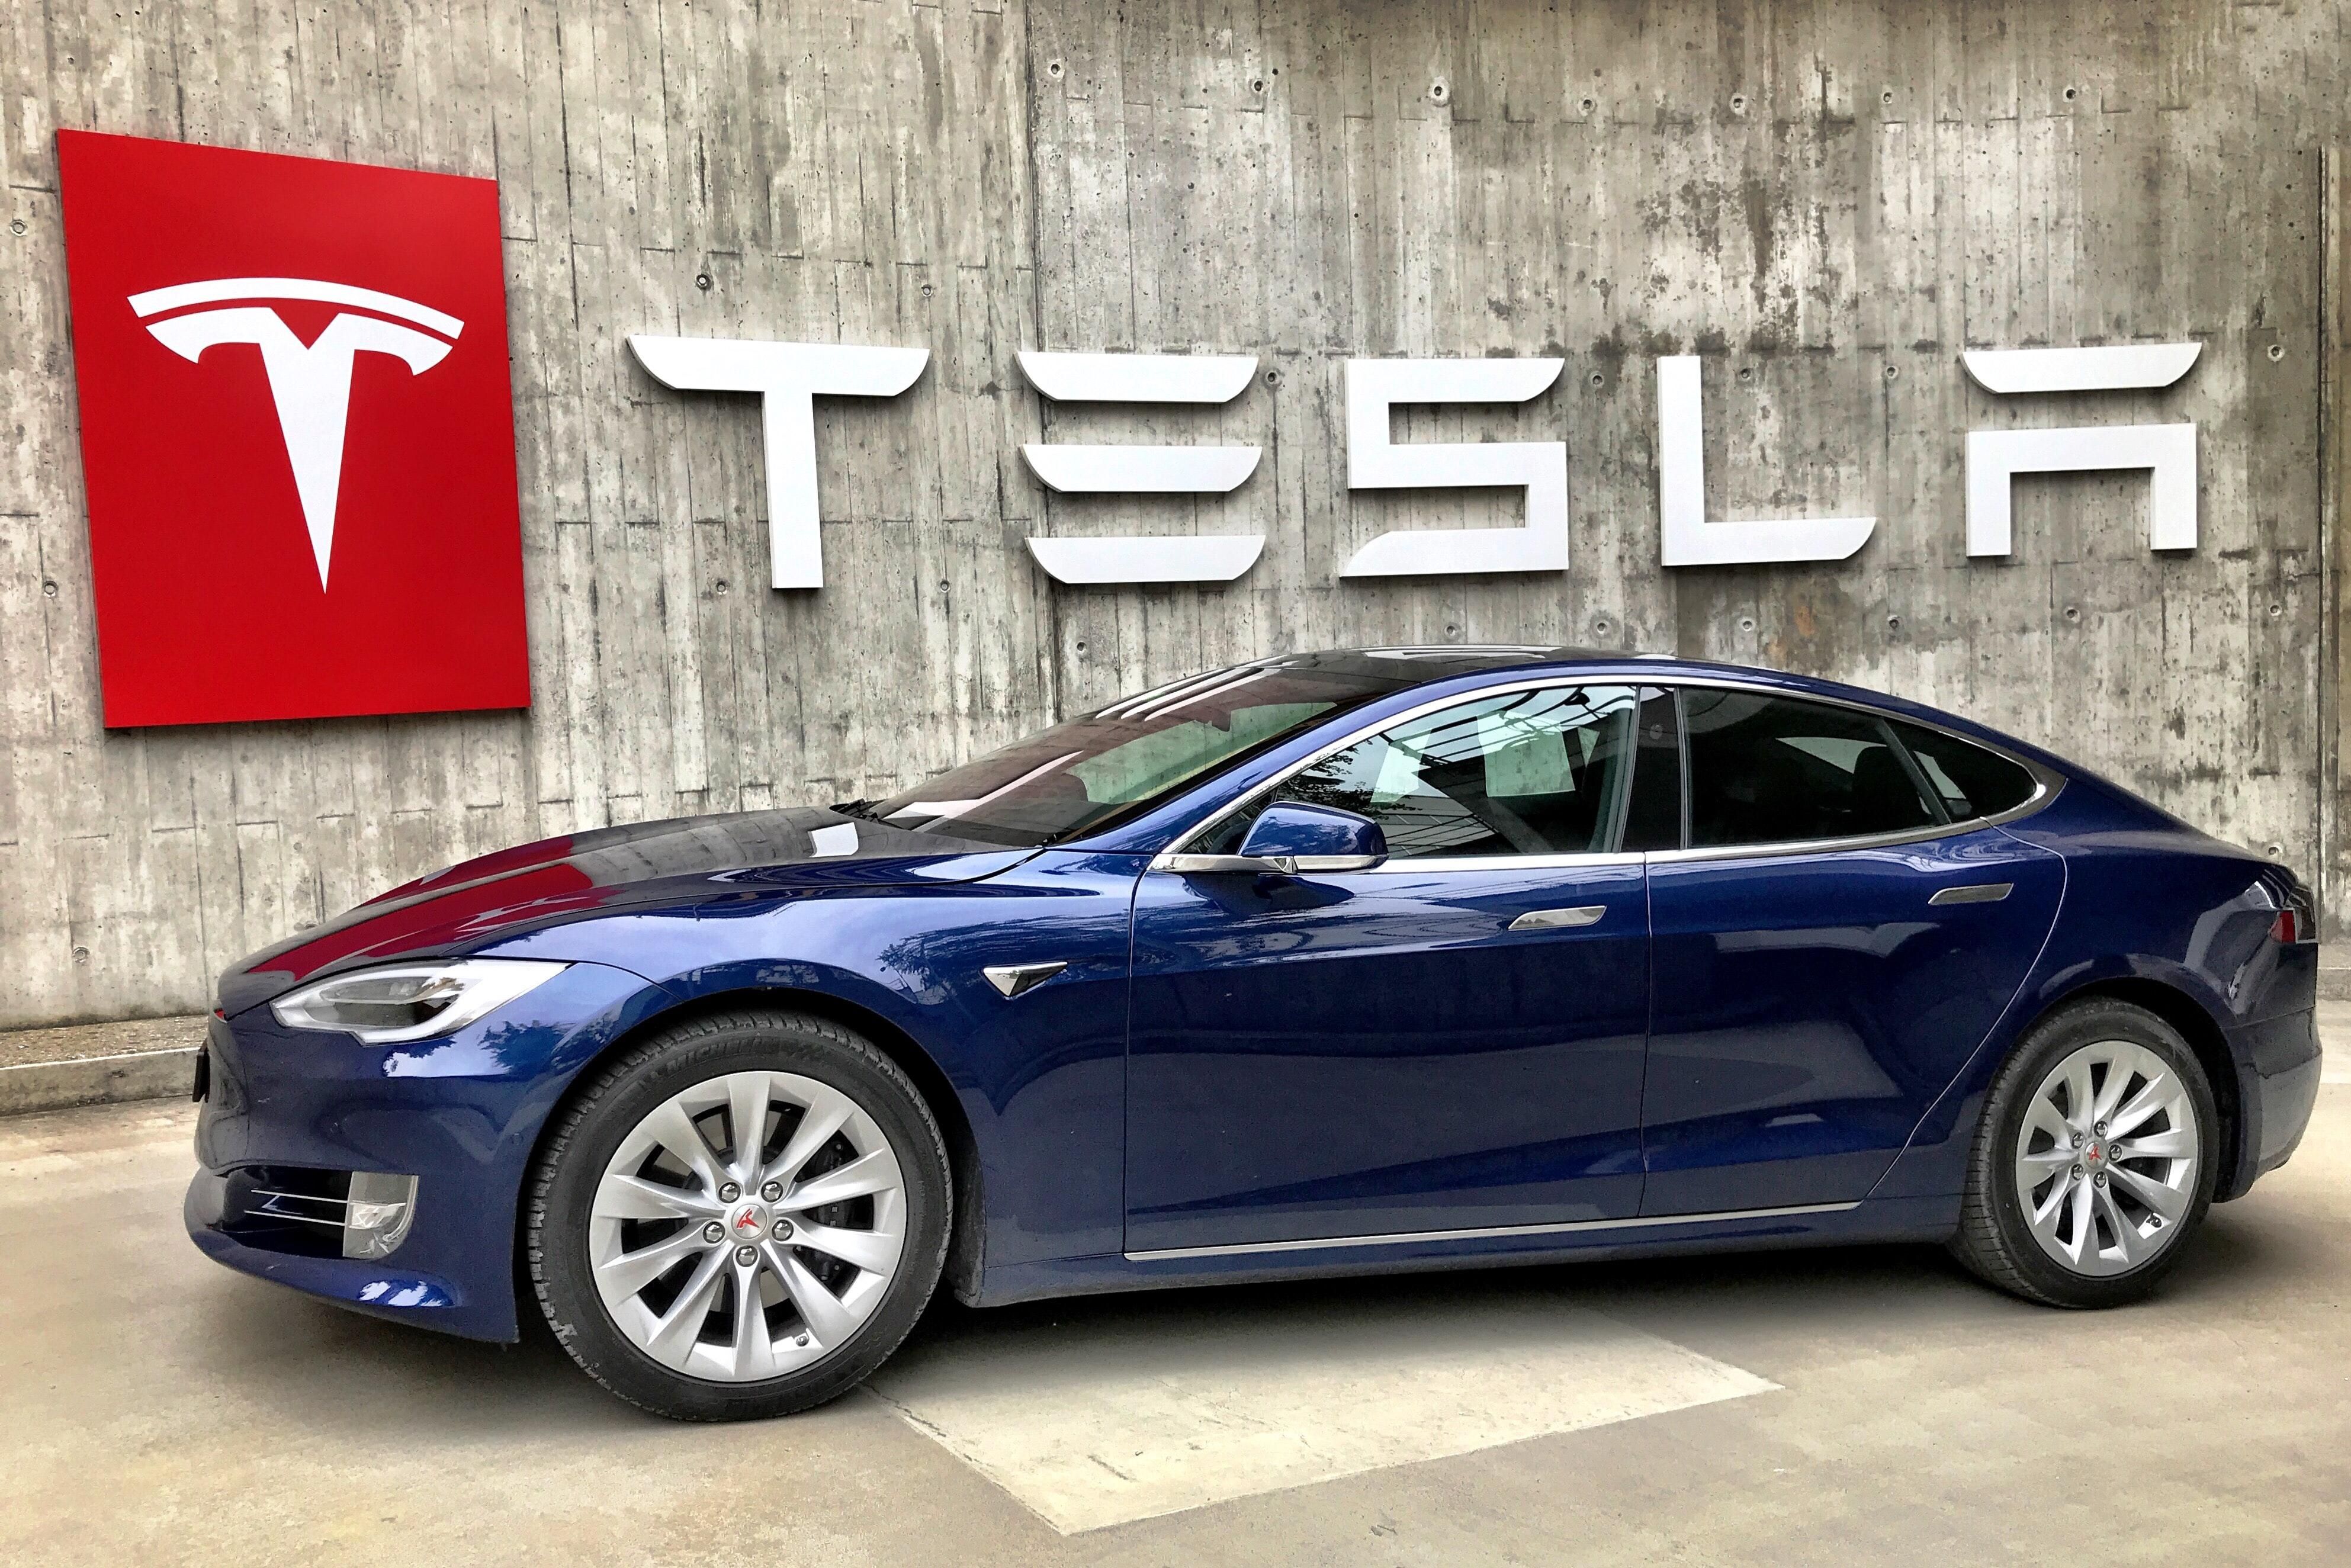 Kék Tesla jármű a Tesla logója és felirata előtt